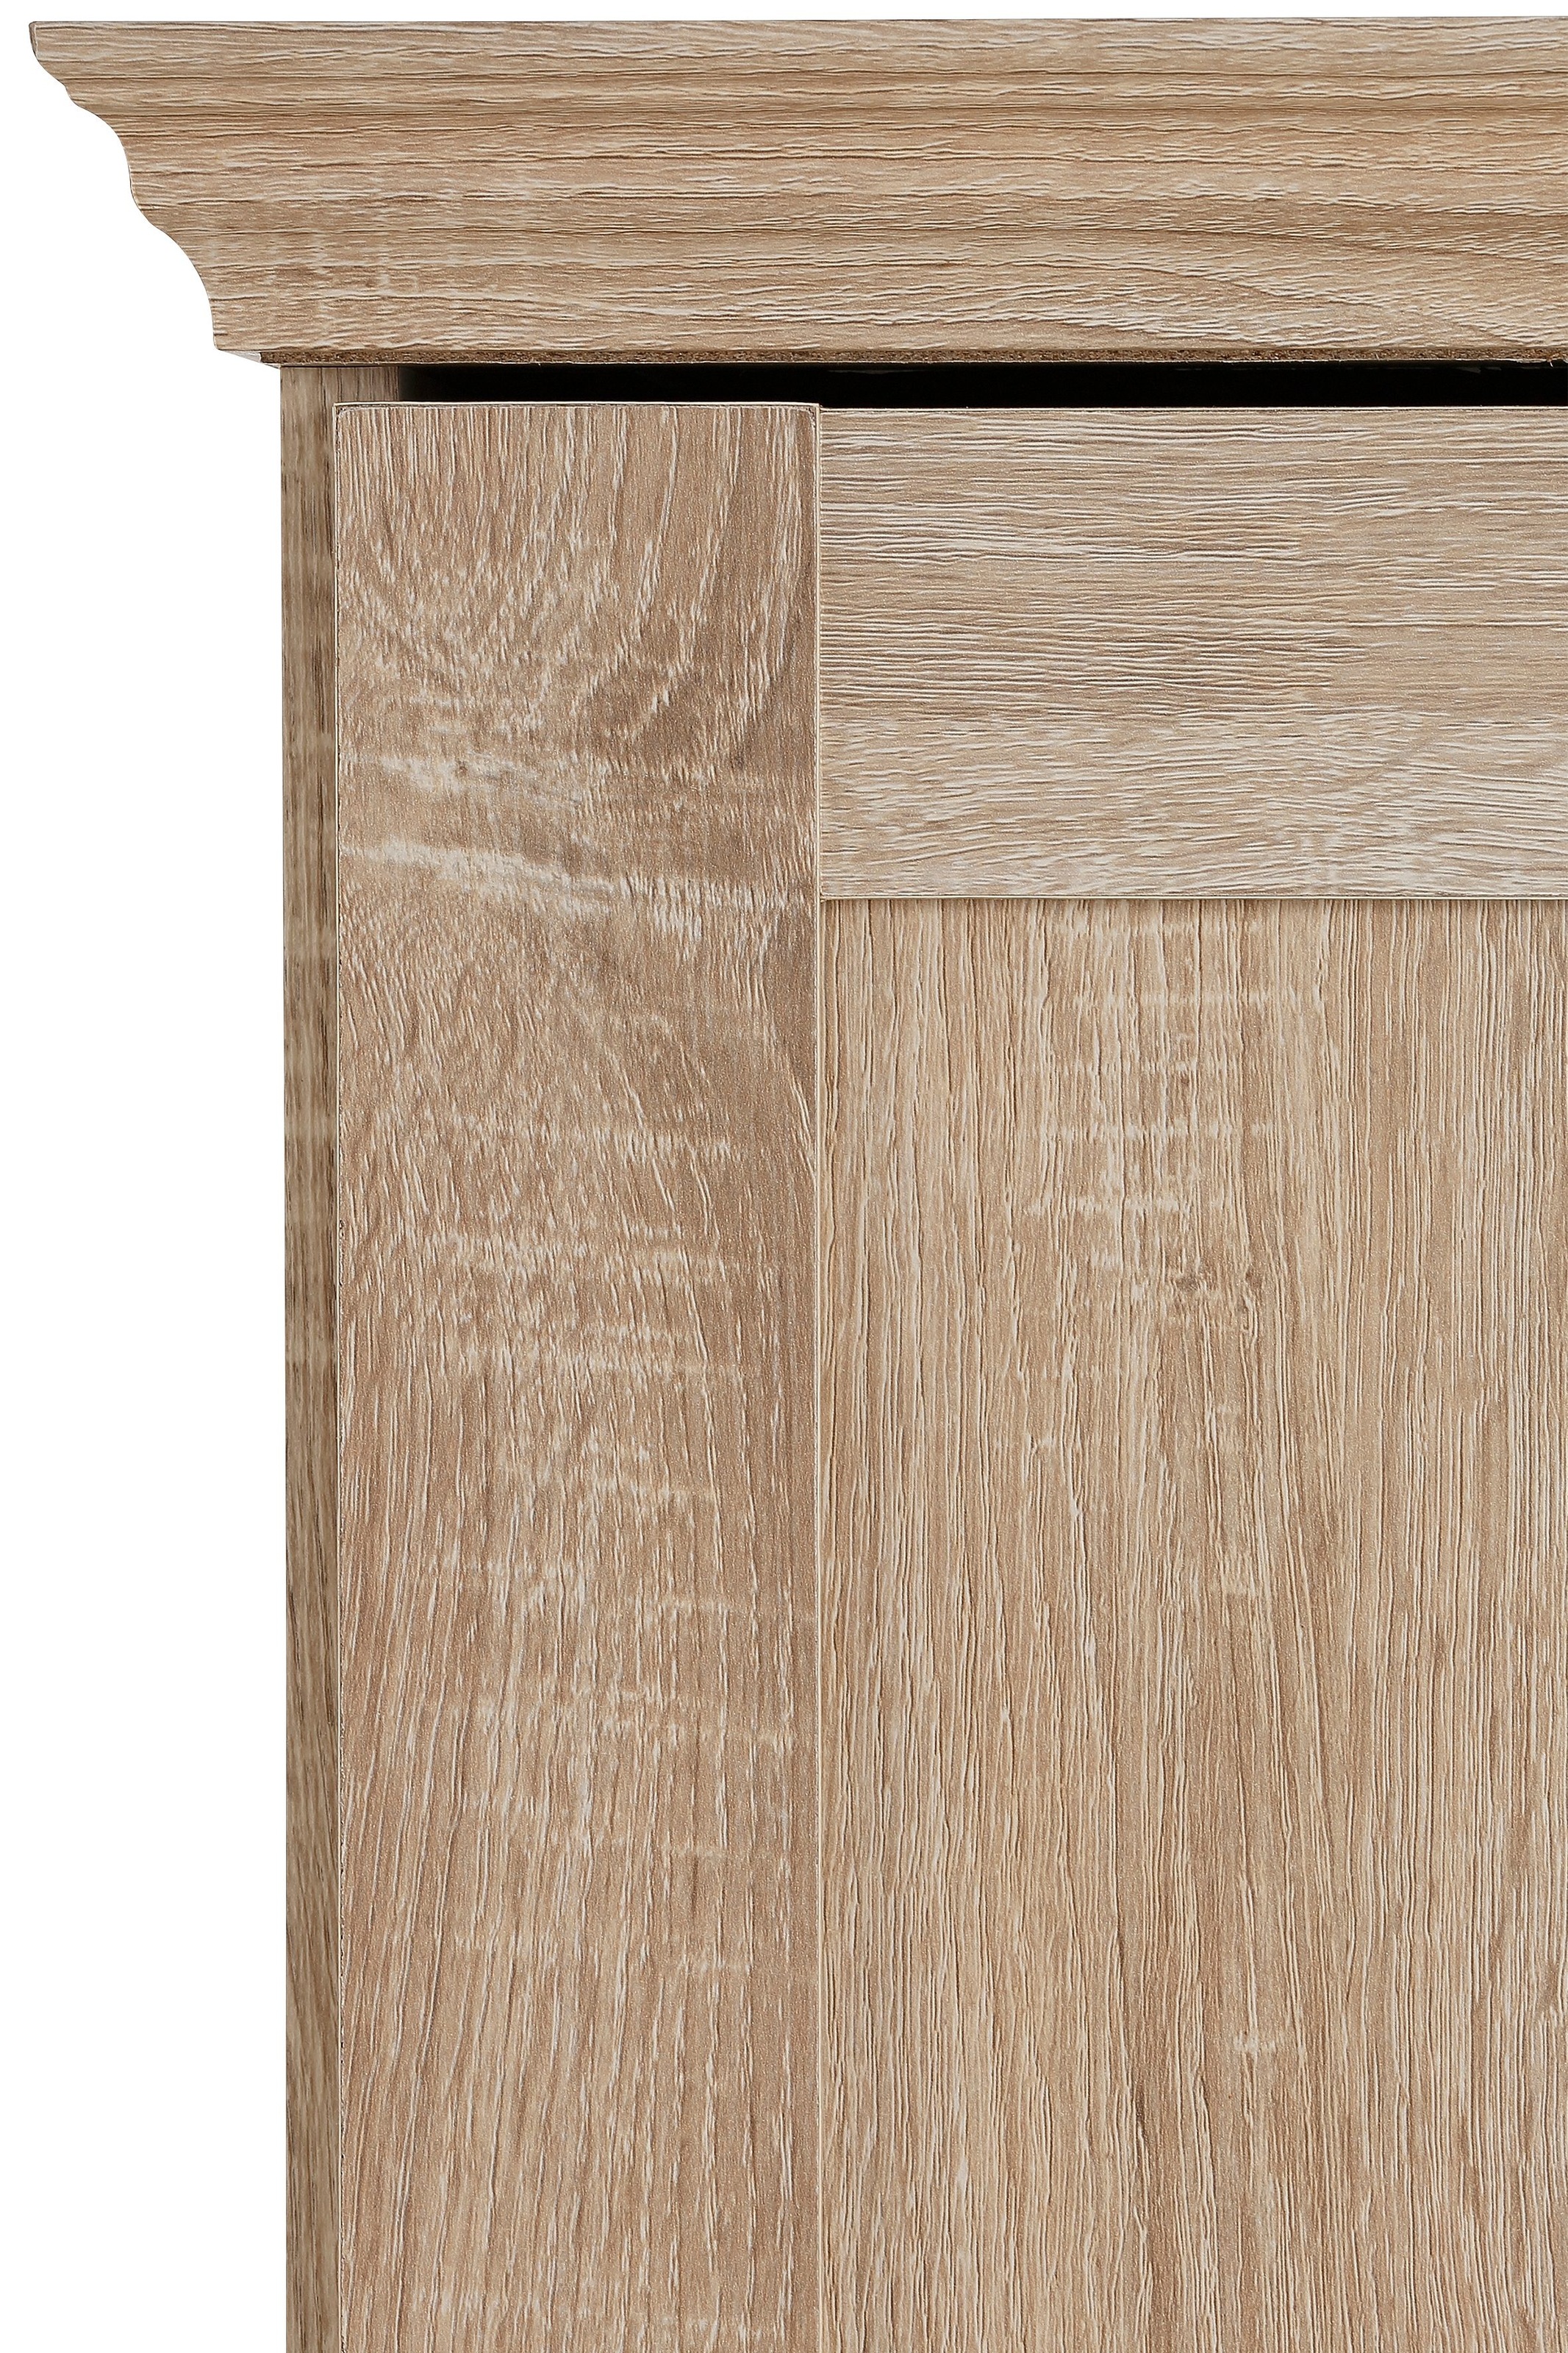 Home affaire Garderobenschrank »Binz«, mit schöner Holzoptik, mit vielen  Stauraummöglichkeiten, Höhe 180 cm kaufen | BAUR